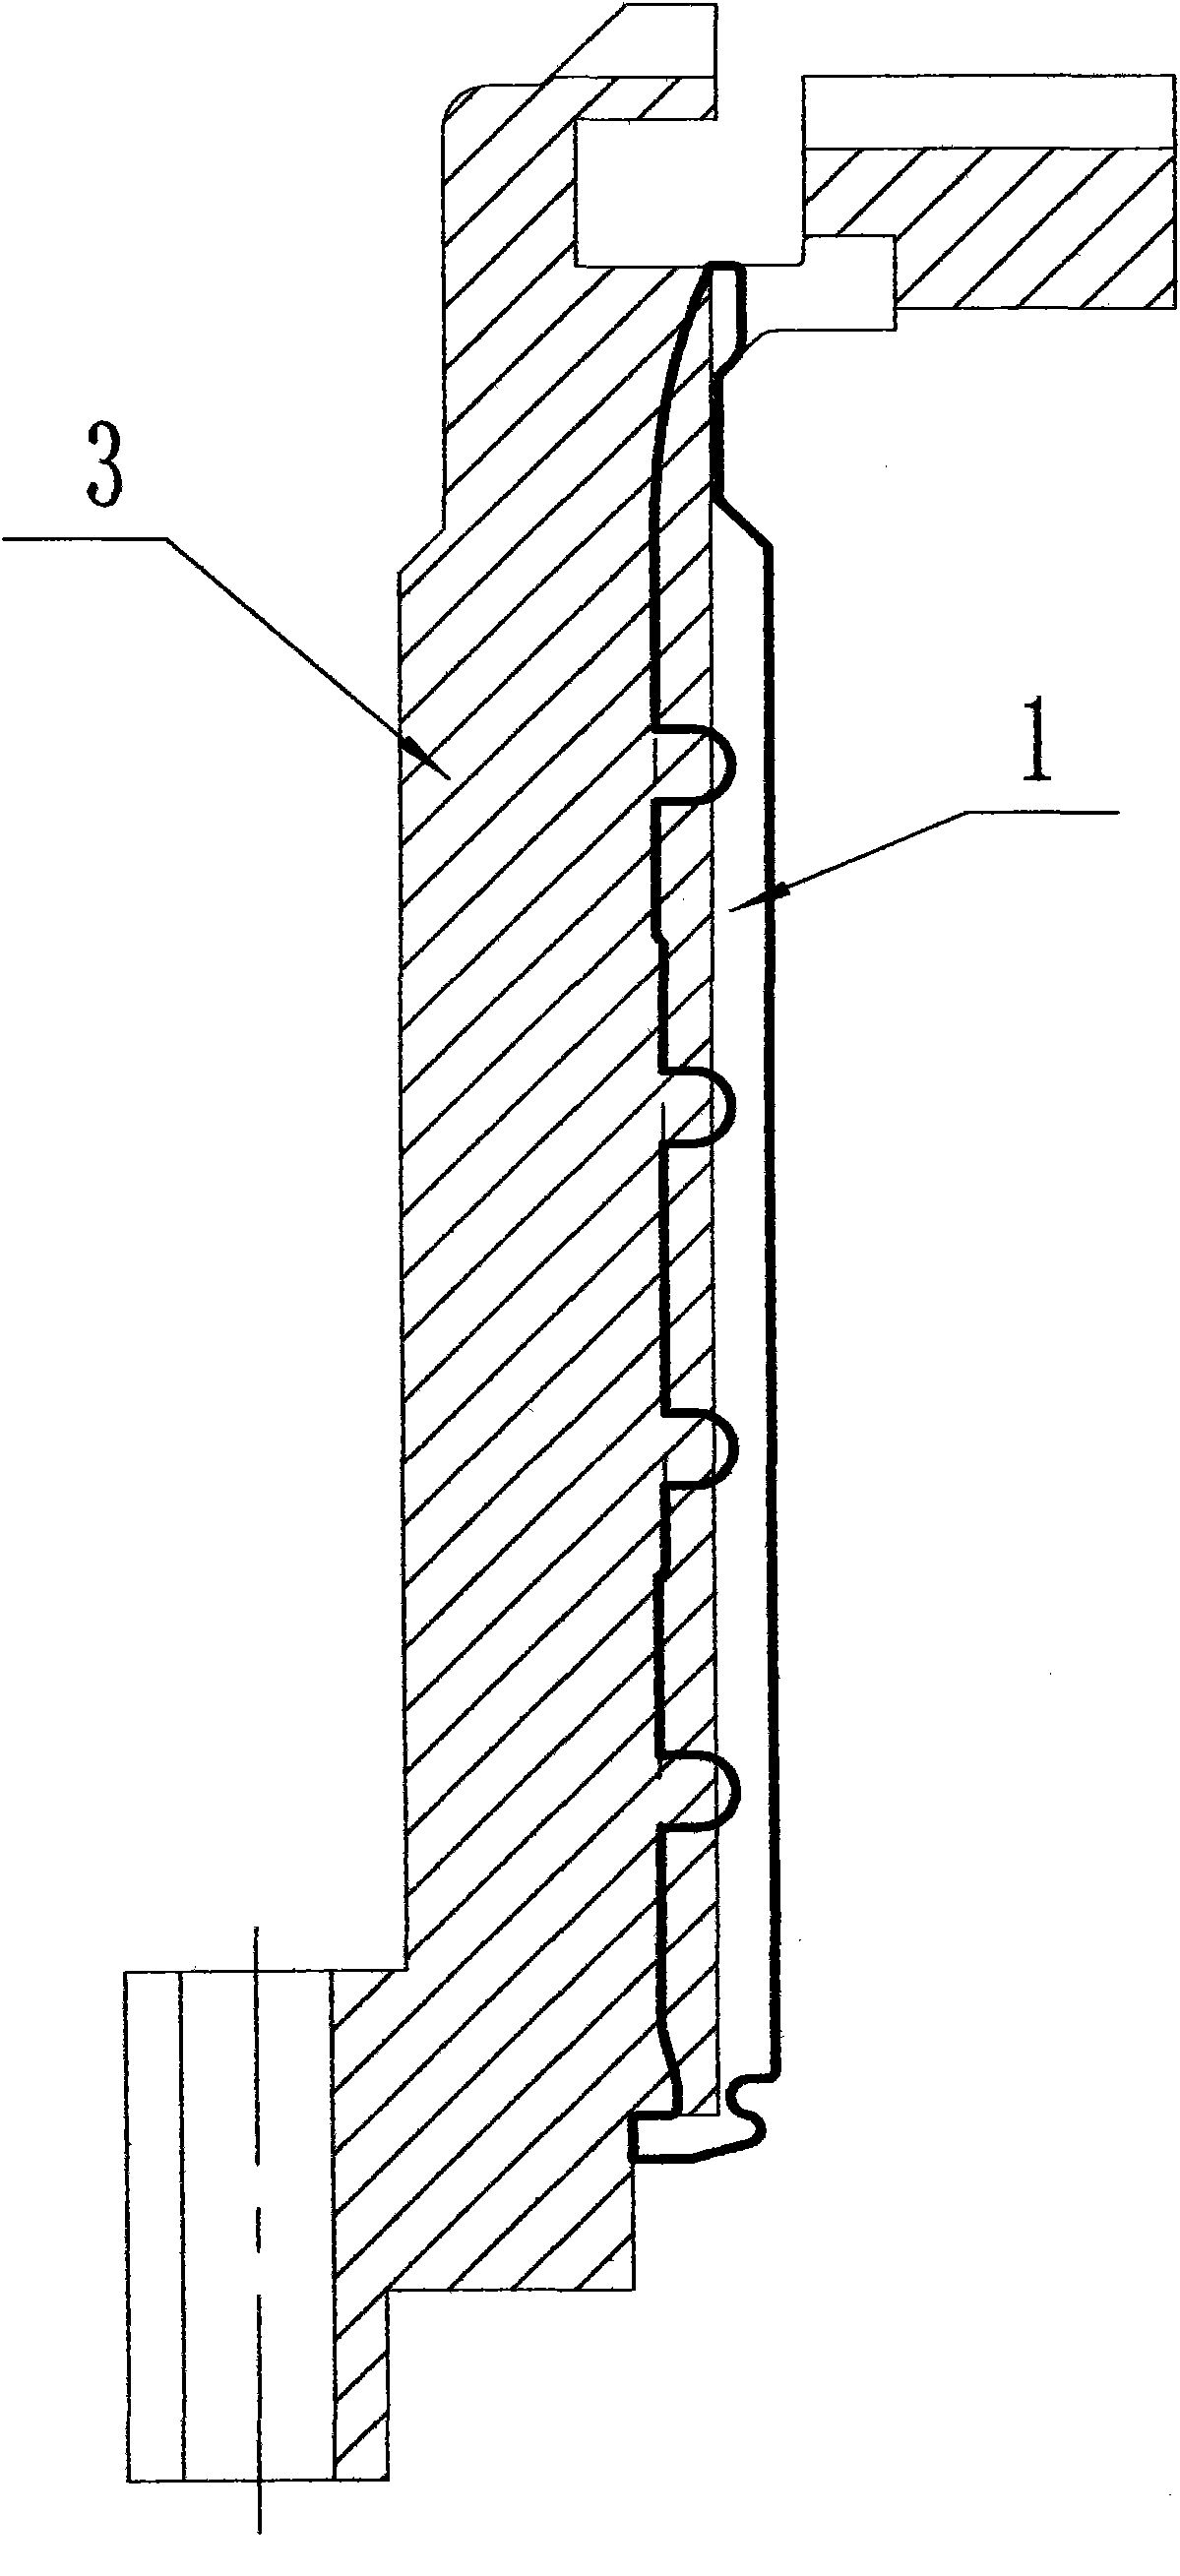 Improved type needle cylinder illustration